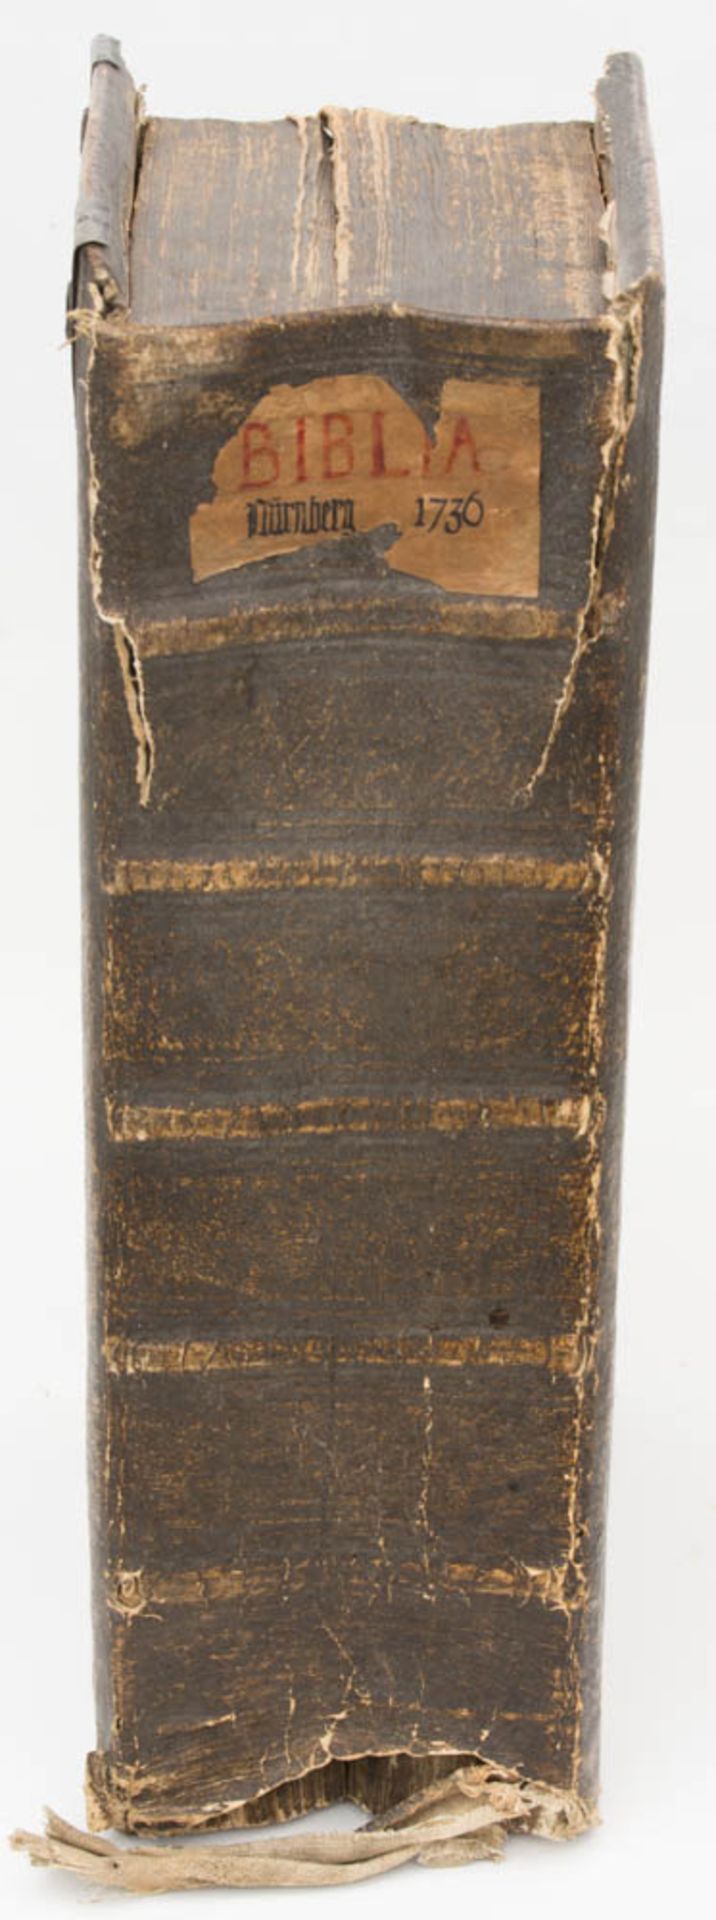 Illustrierte Dilherr-Bibel, Endter-Verlag, Nürnberg, 1736.Die ganze heilige Schrift des Alten und - Bild 6 aus 7